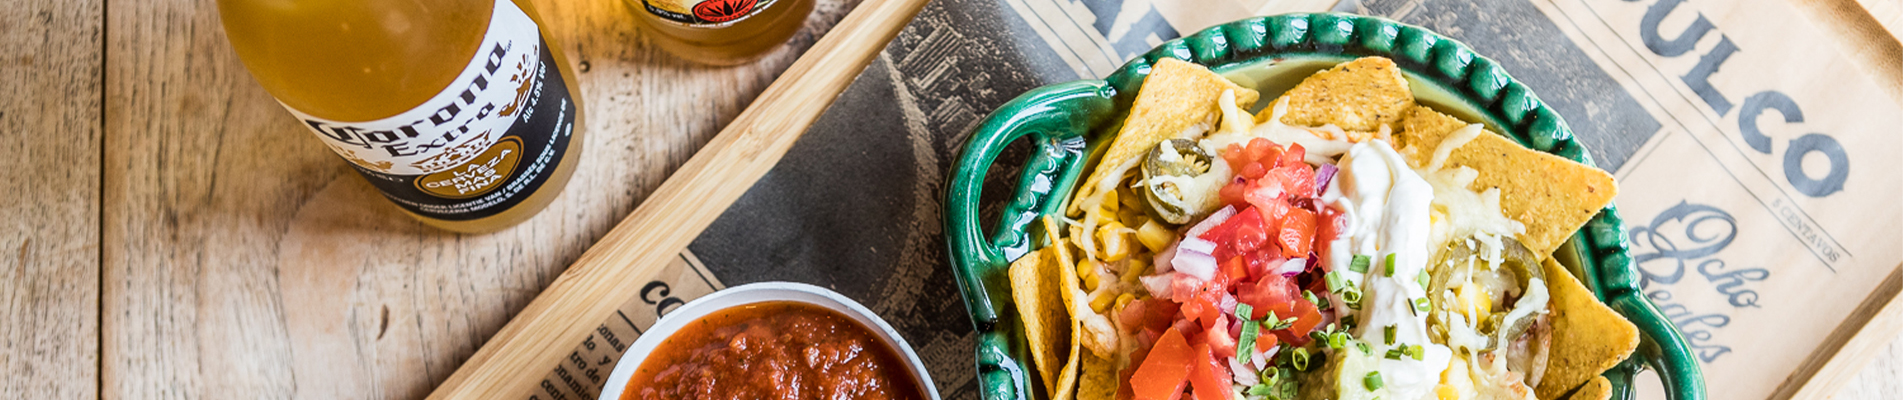 Voor de allerlekkerste Mexicaanse maaltijden bestel je bij ons nieuwste aanwinst Tortillas.